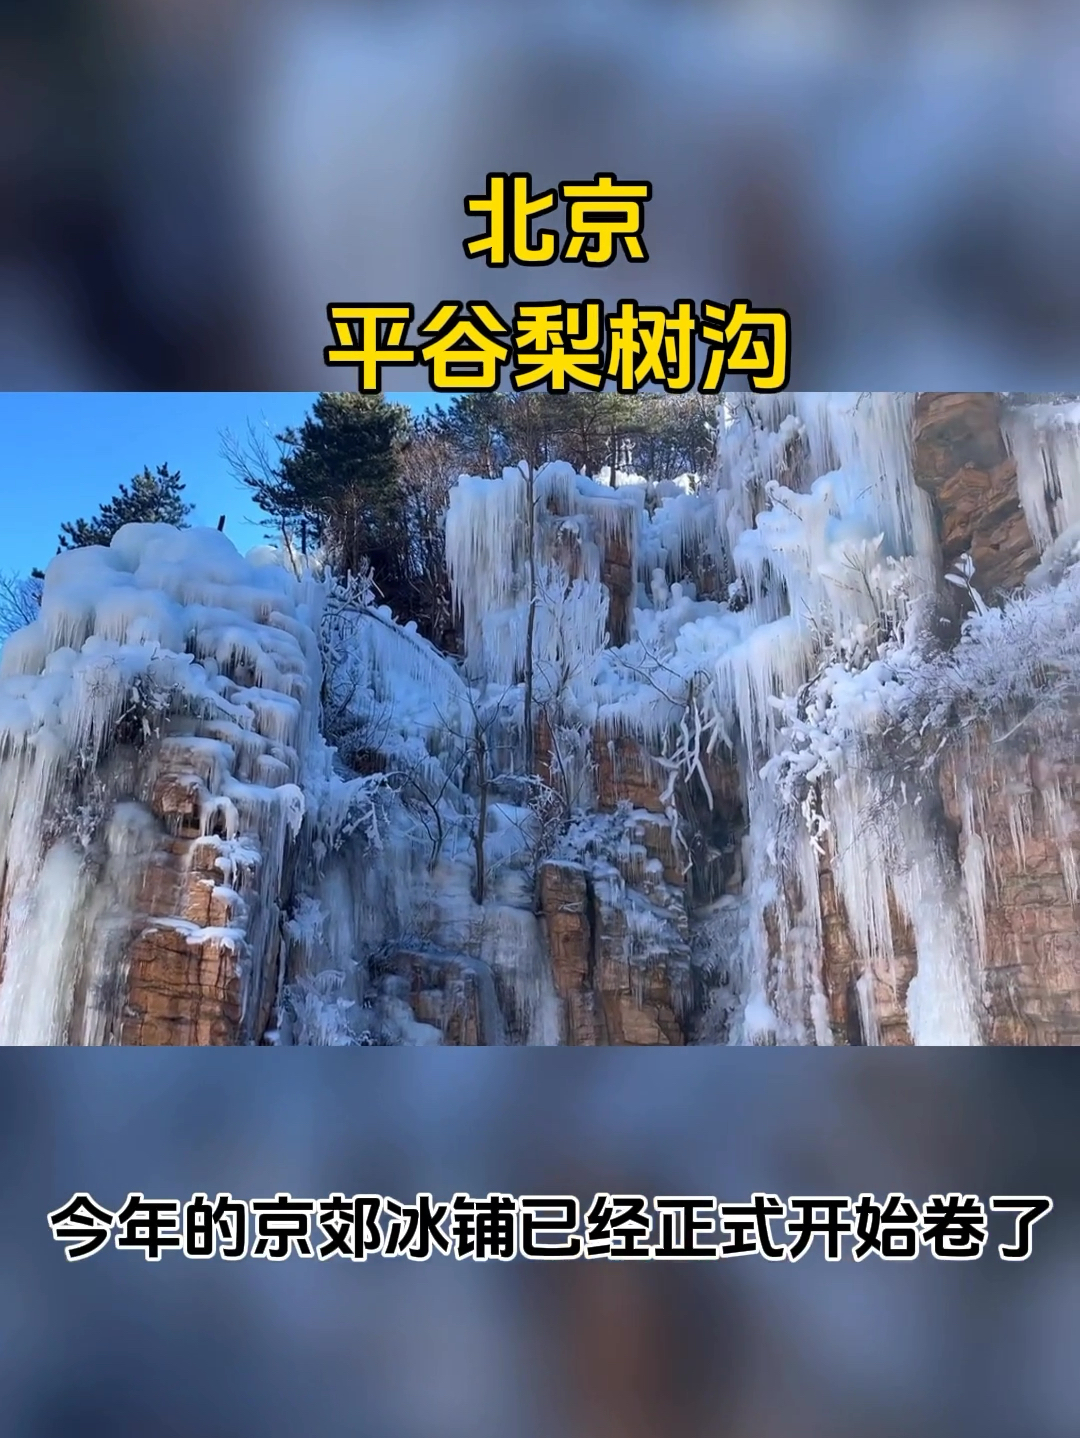 属于北京的冬日限定，推荐给大家